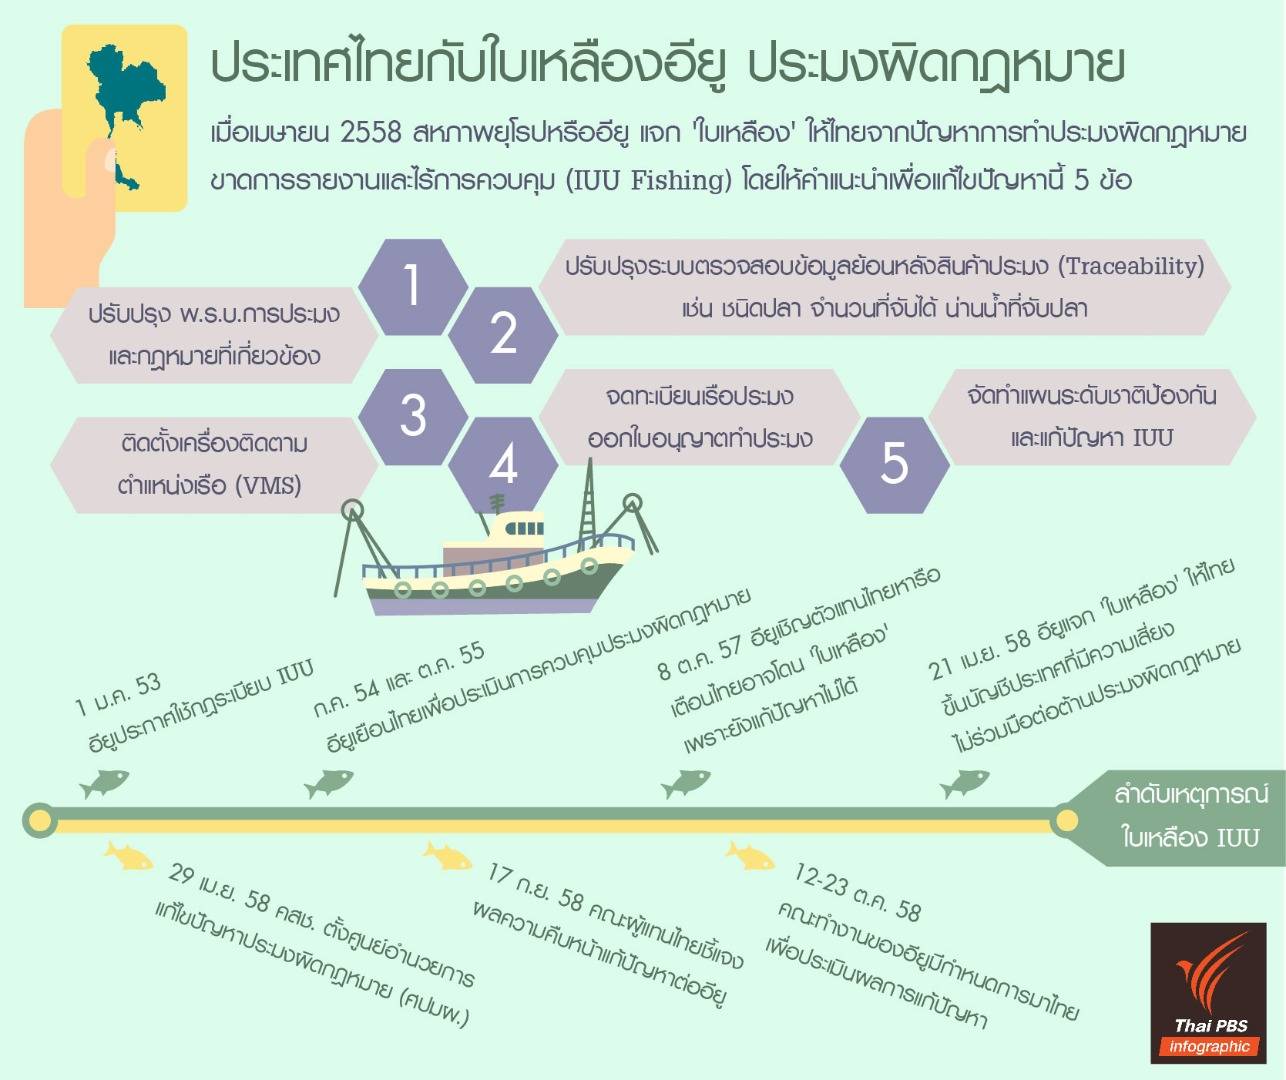 อินโฟกราฟิก : ประเทศไทยกับใบเหลืองอียู "ประมงผิดกฎหมาย"